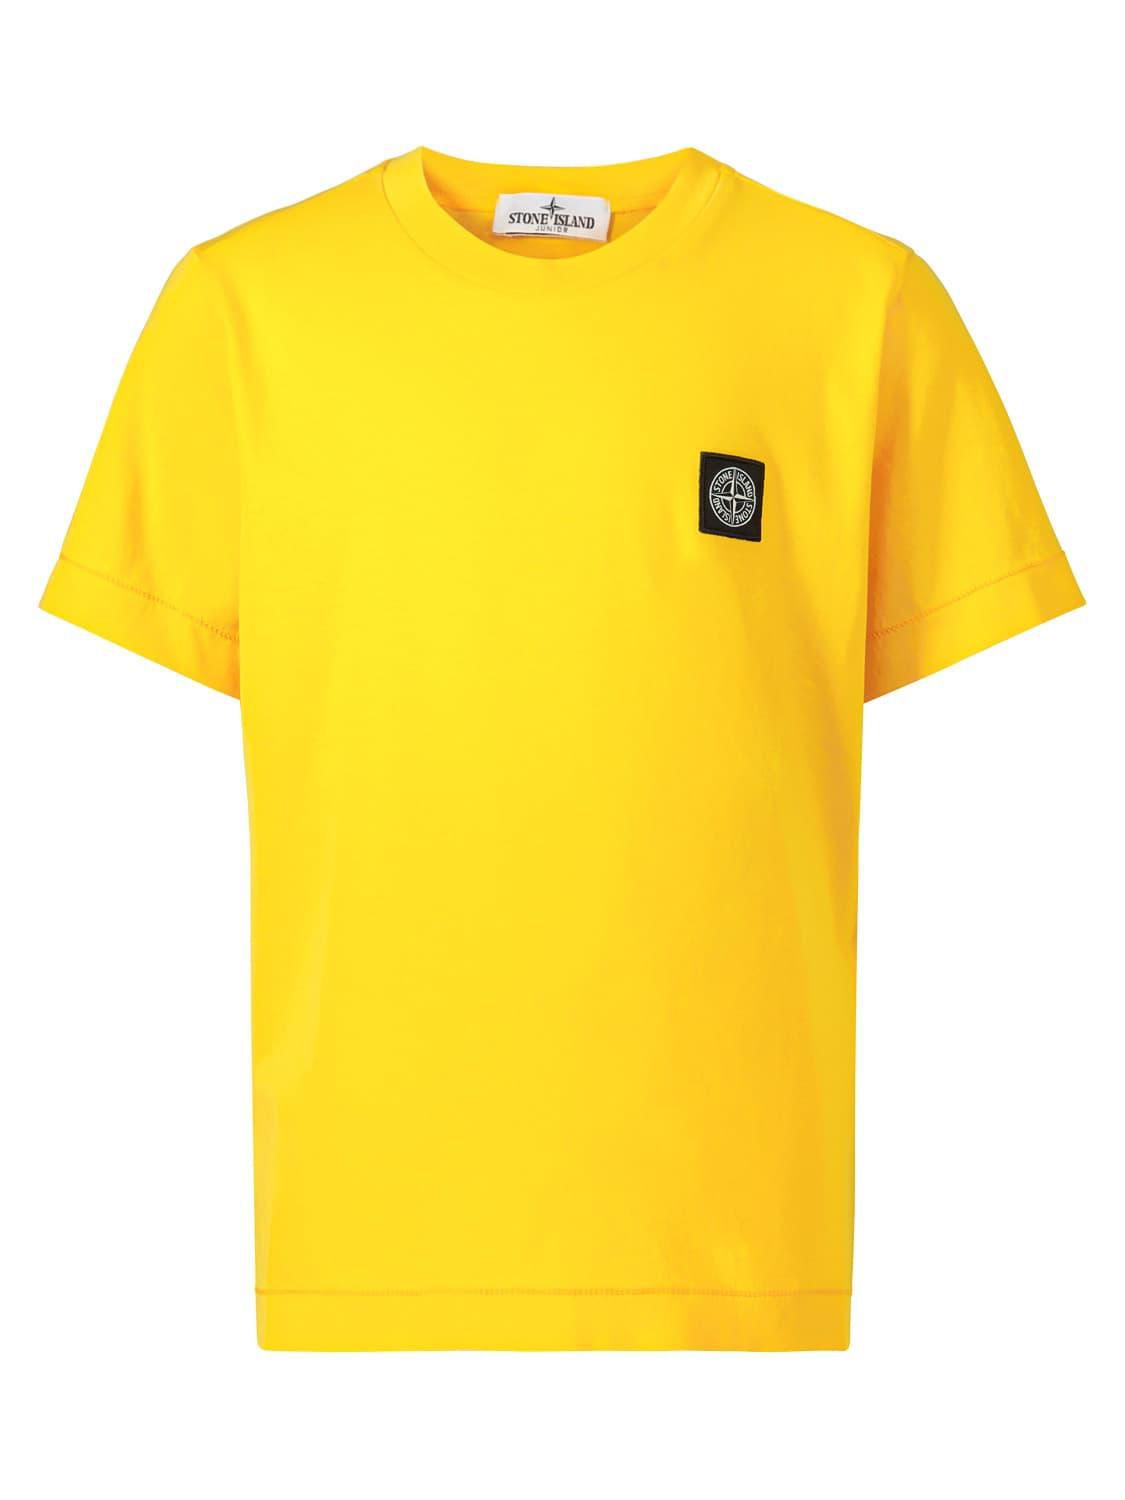 Stone Island majica žuta